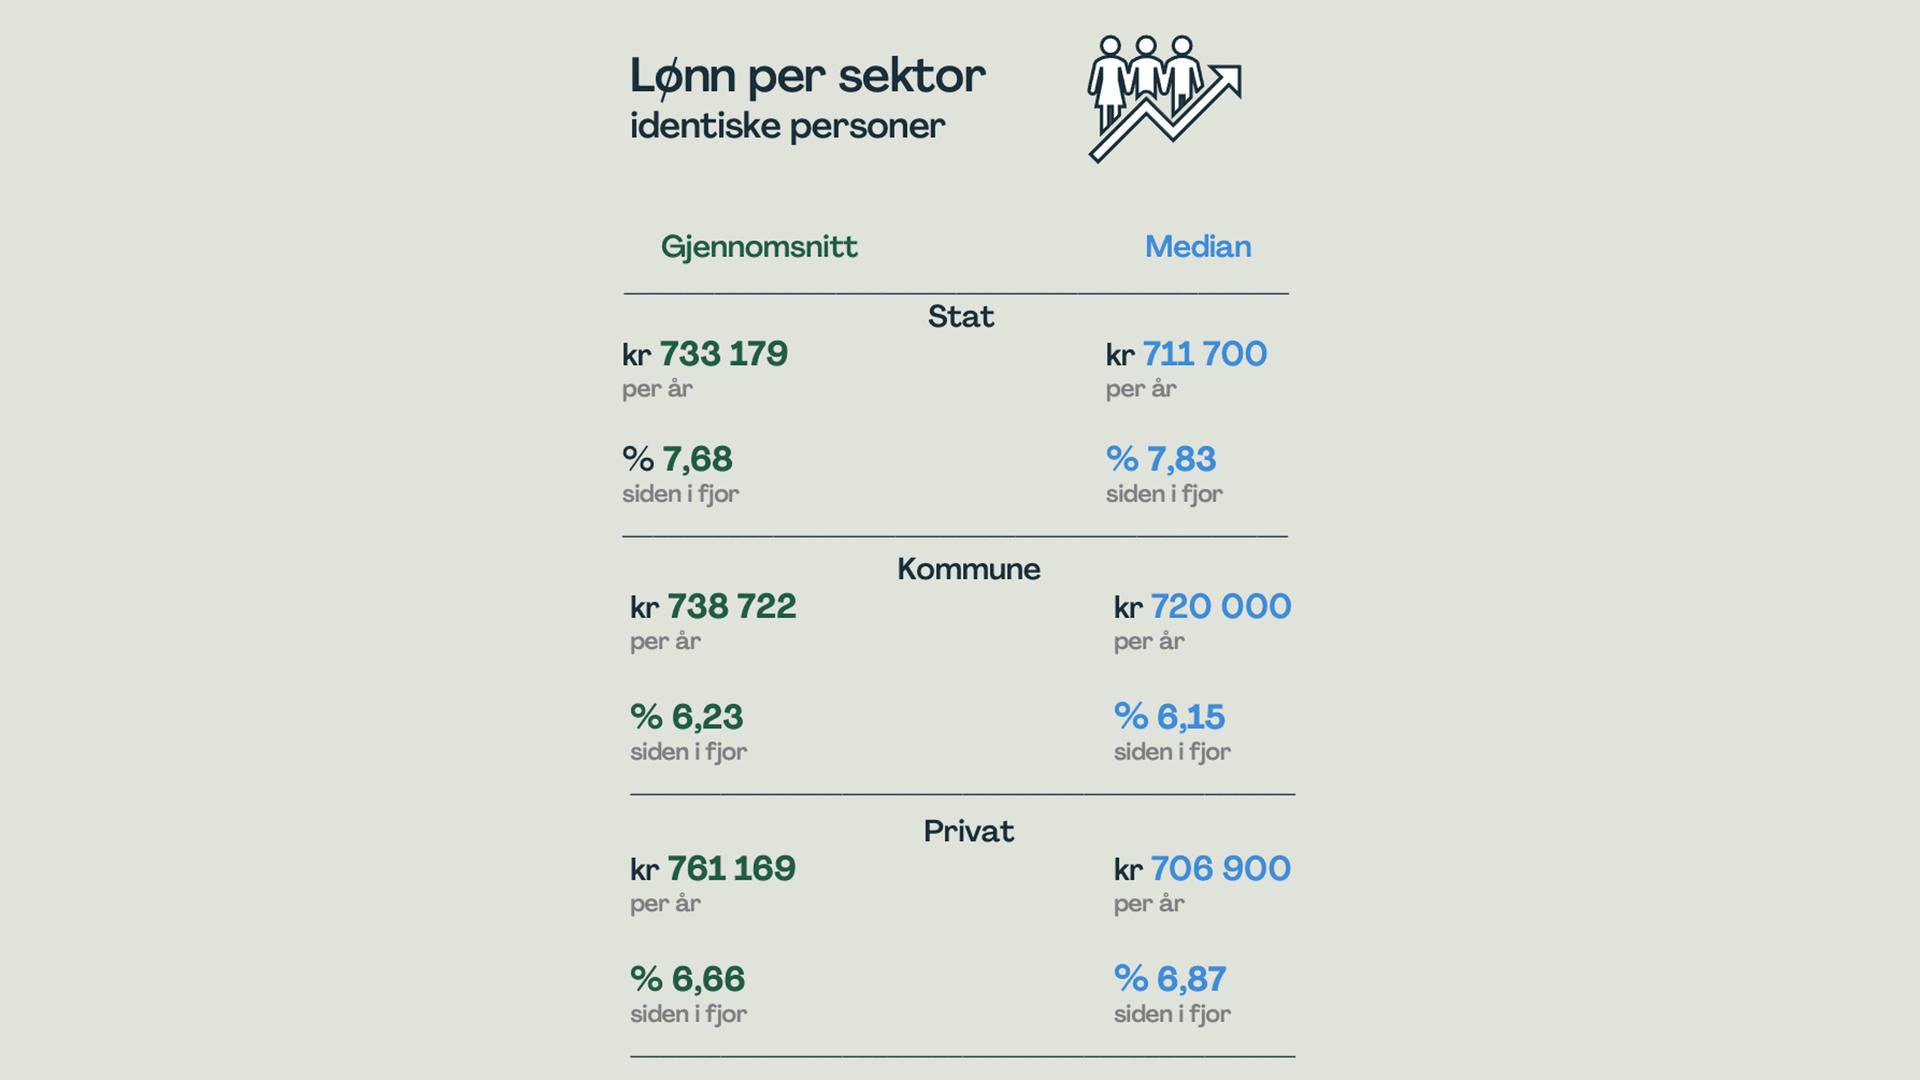 Lønn per sektor identiske personer